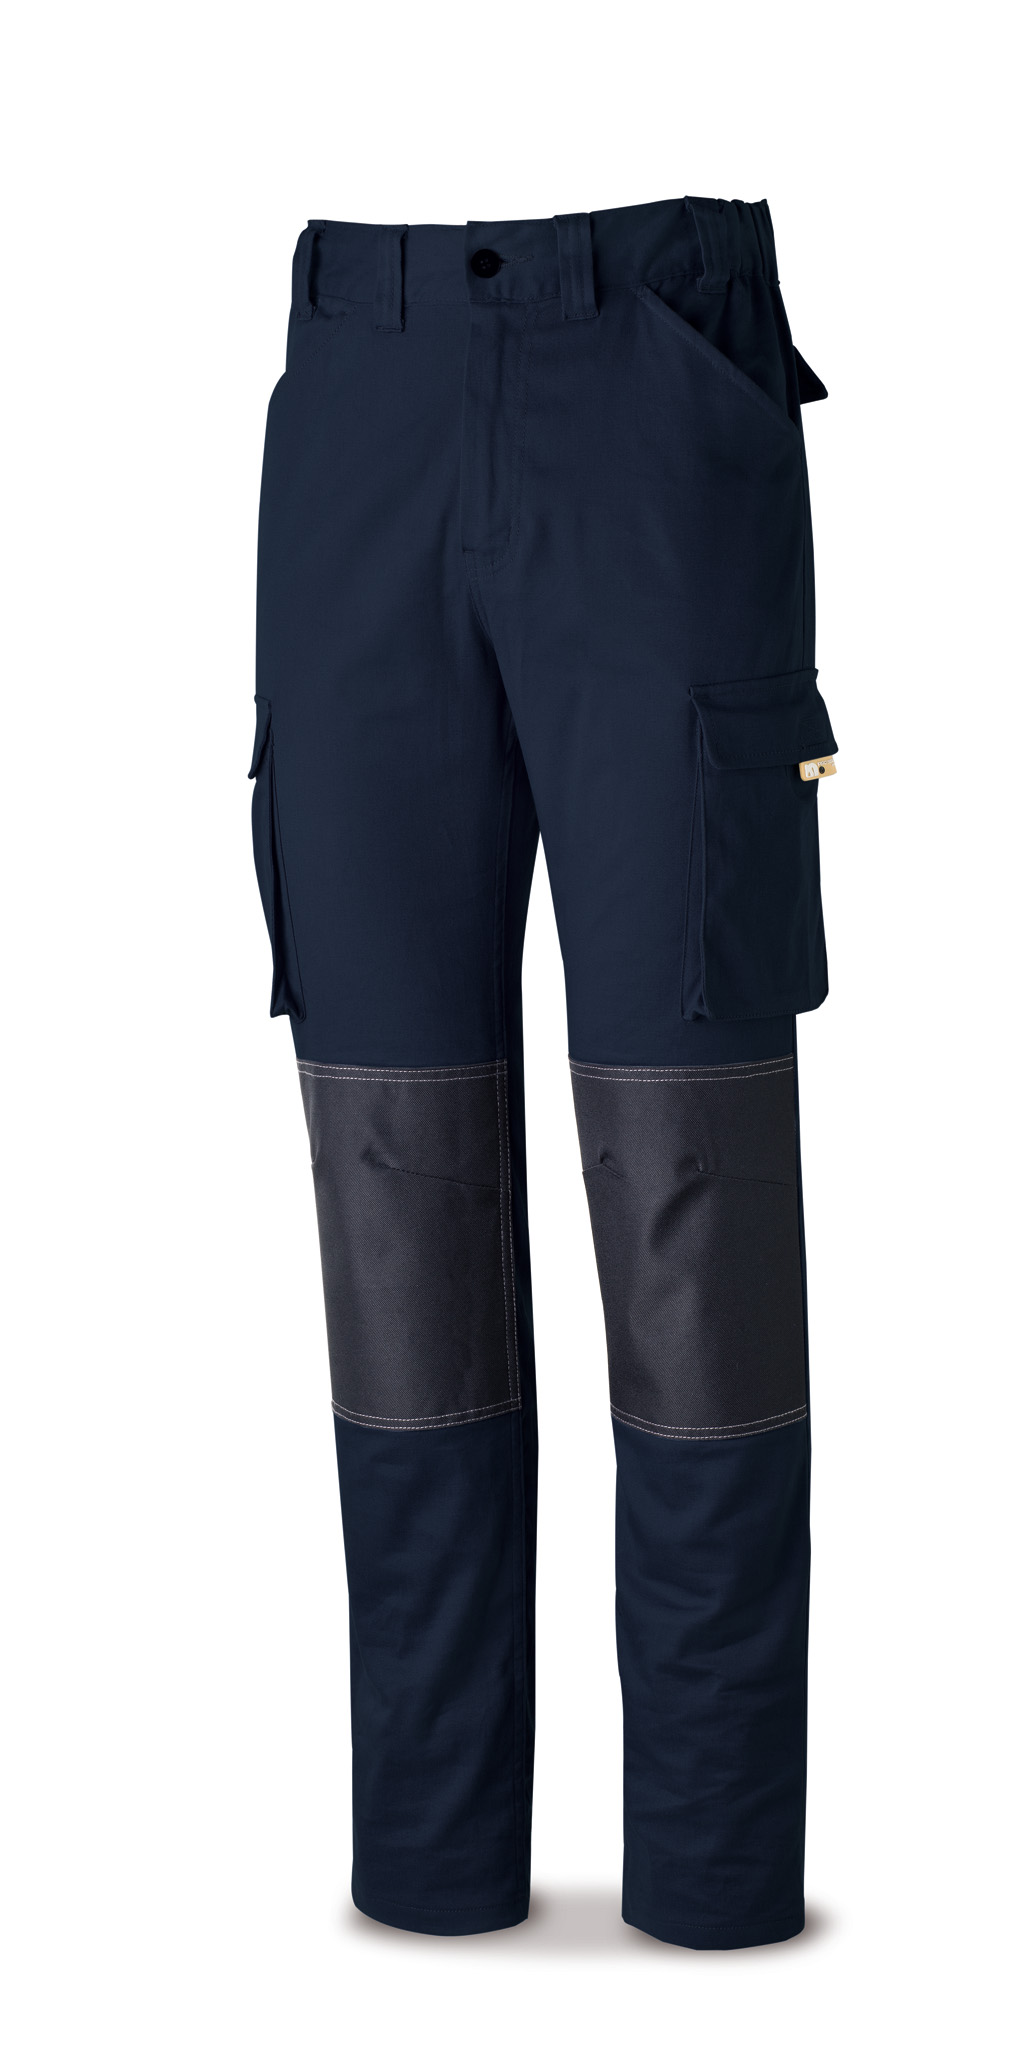 588-PSTRA Vetements de travail laboral Pro Series Pantalon ÉLASTIQUE coton et élasthane. Coloris bleu marine.